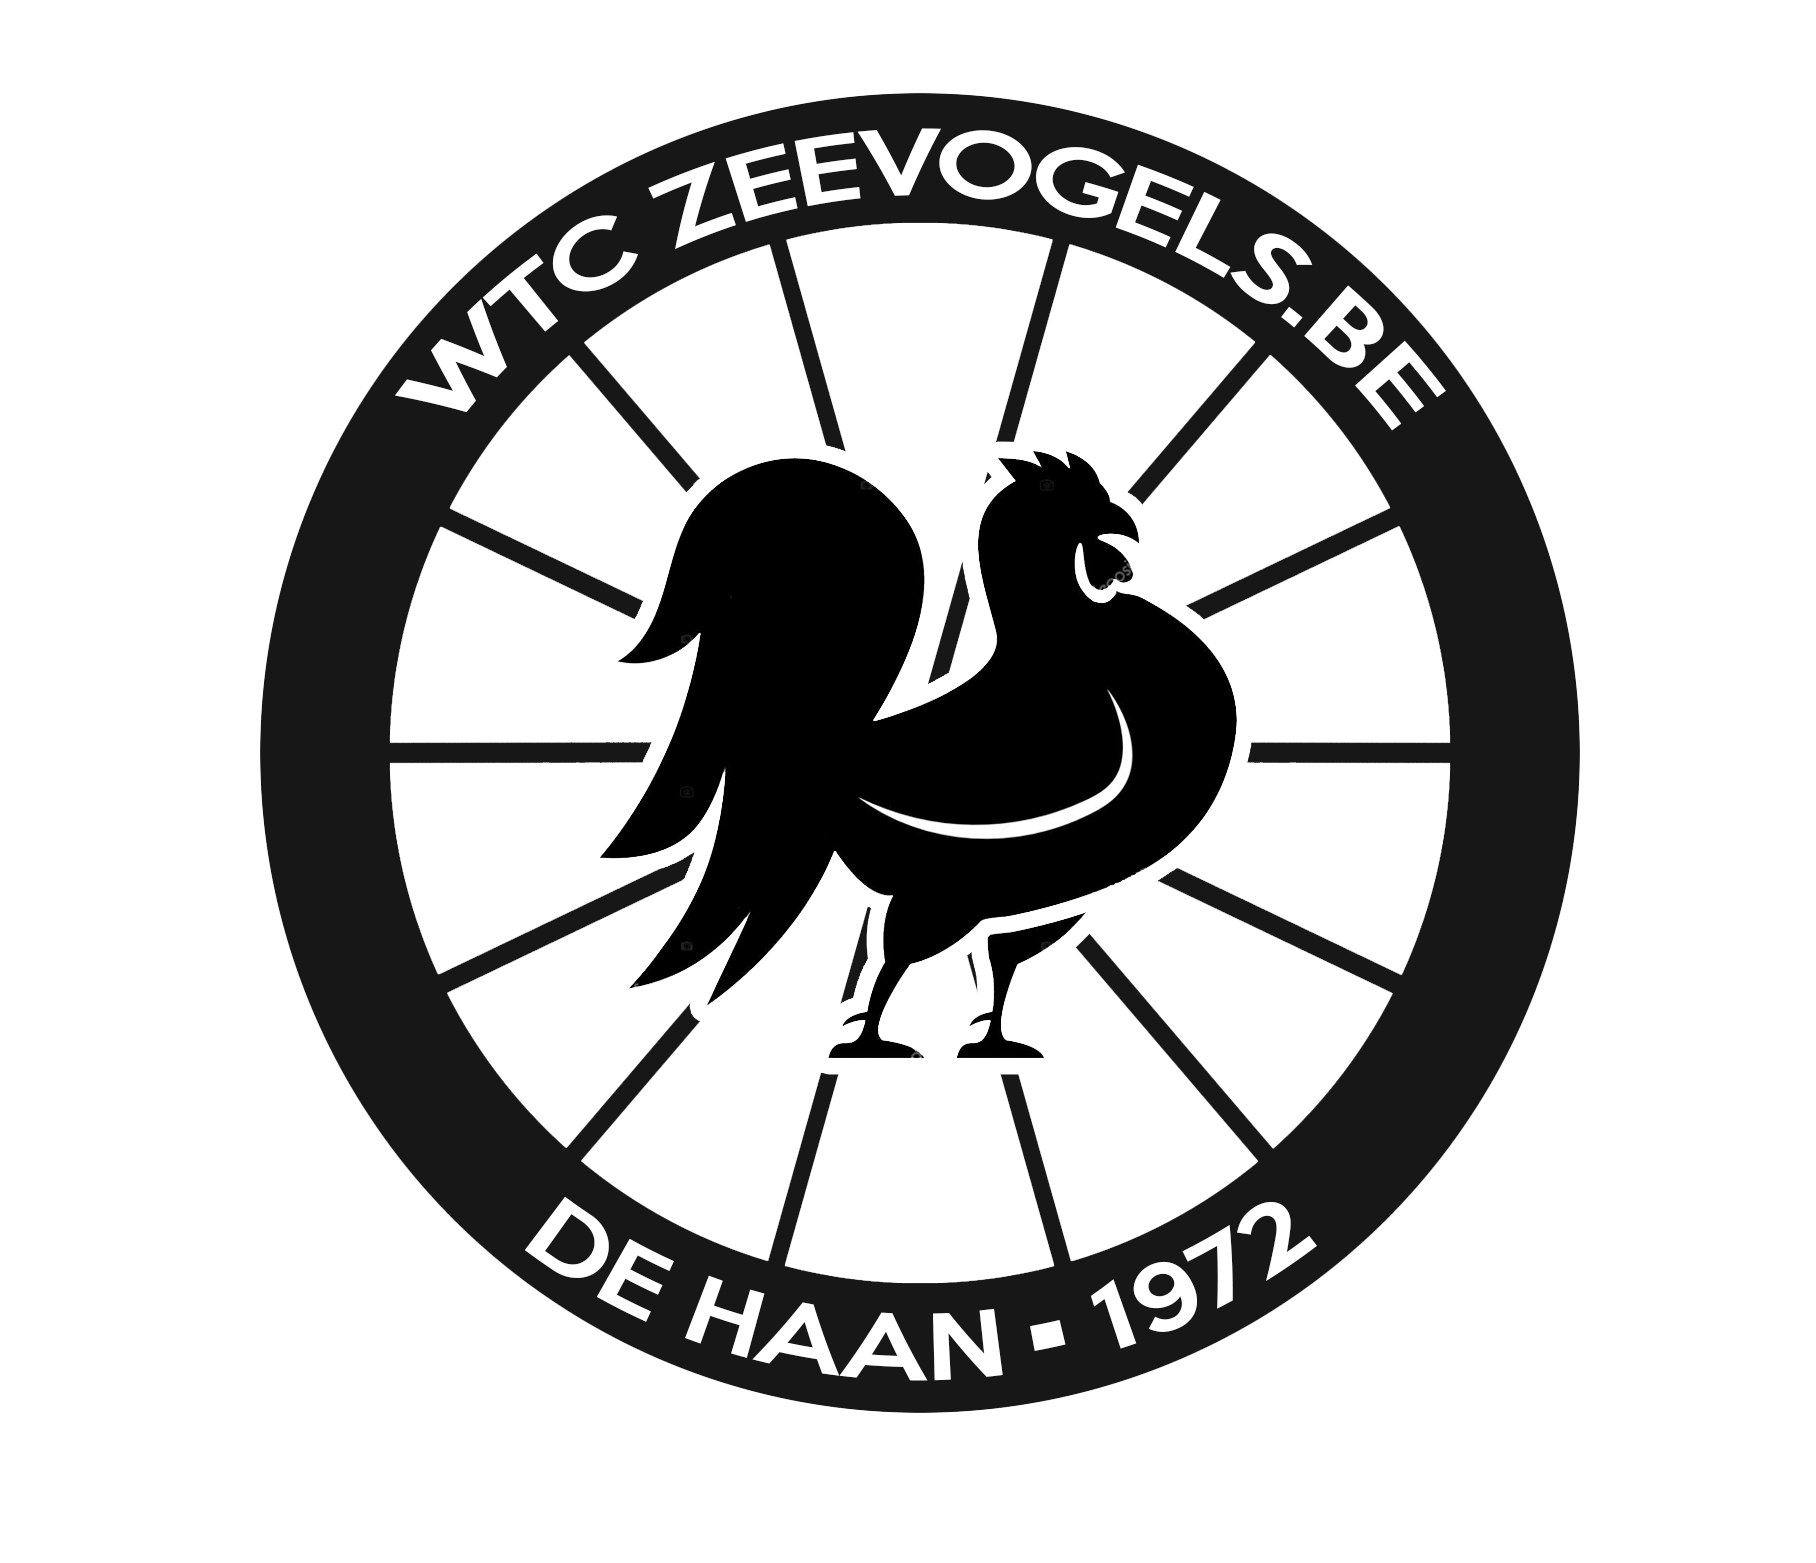 WTC Zeevogels De Haan